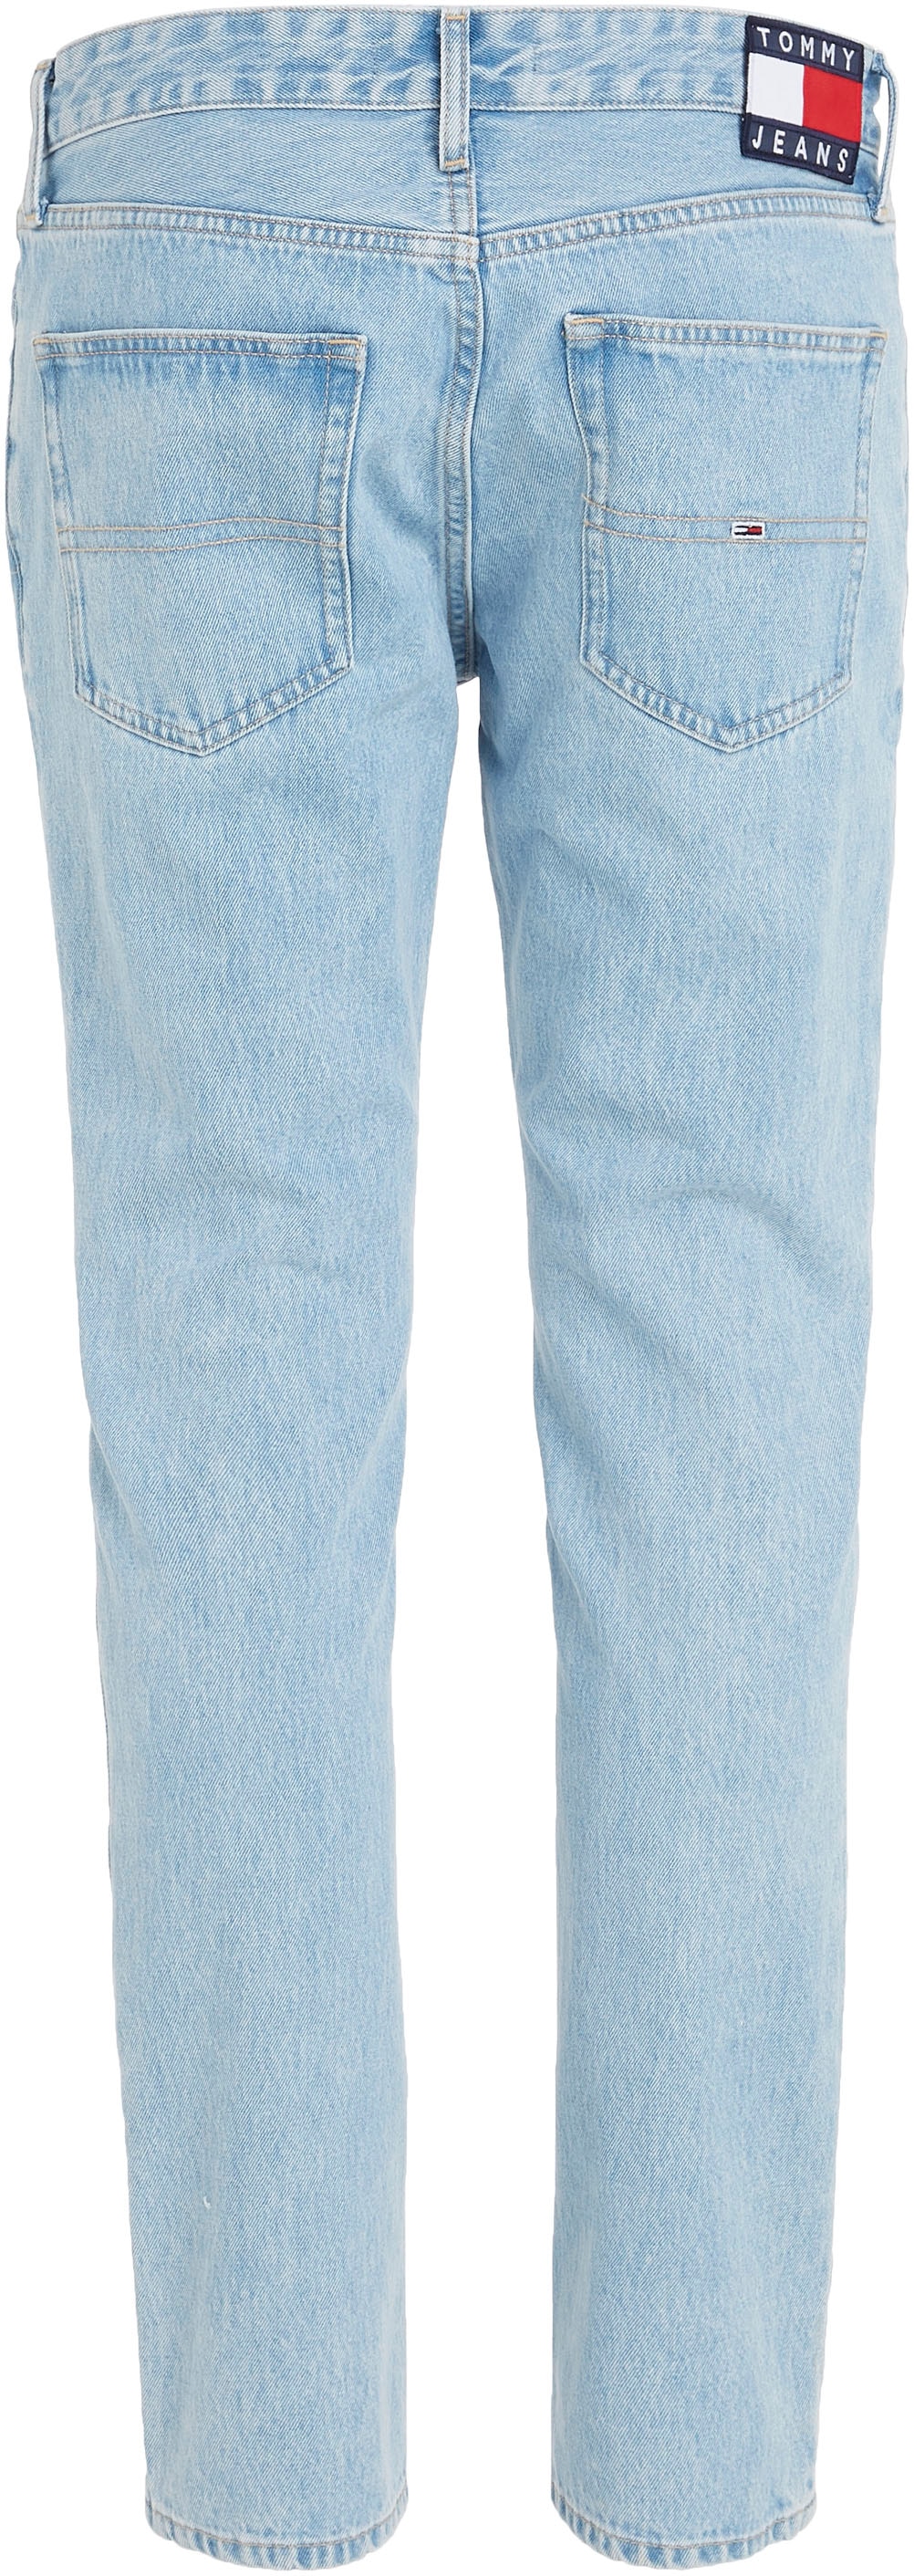 BG4015«, Slim-fit-Jeans »SCANTON SLIM 5-Pocket-Stil Tommy ♕ Jeans im bei